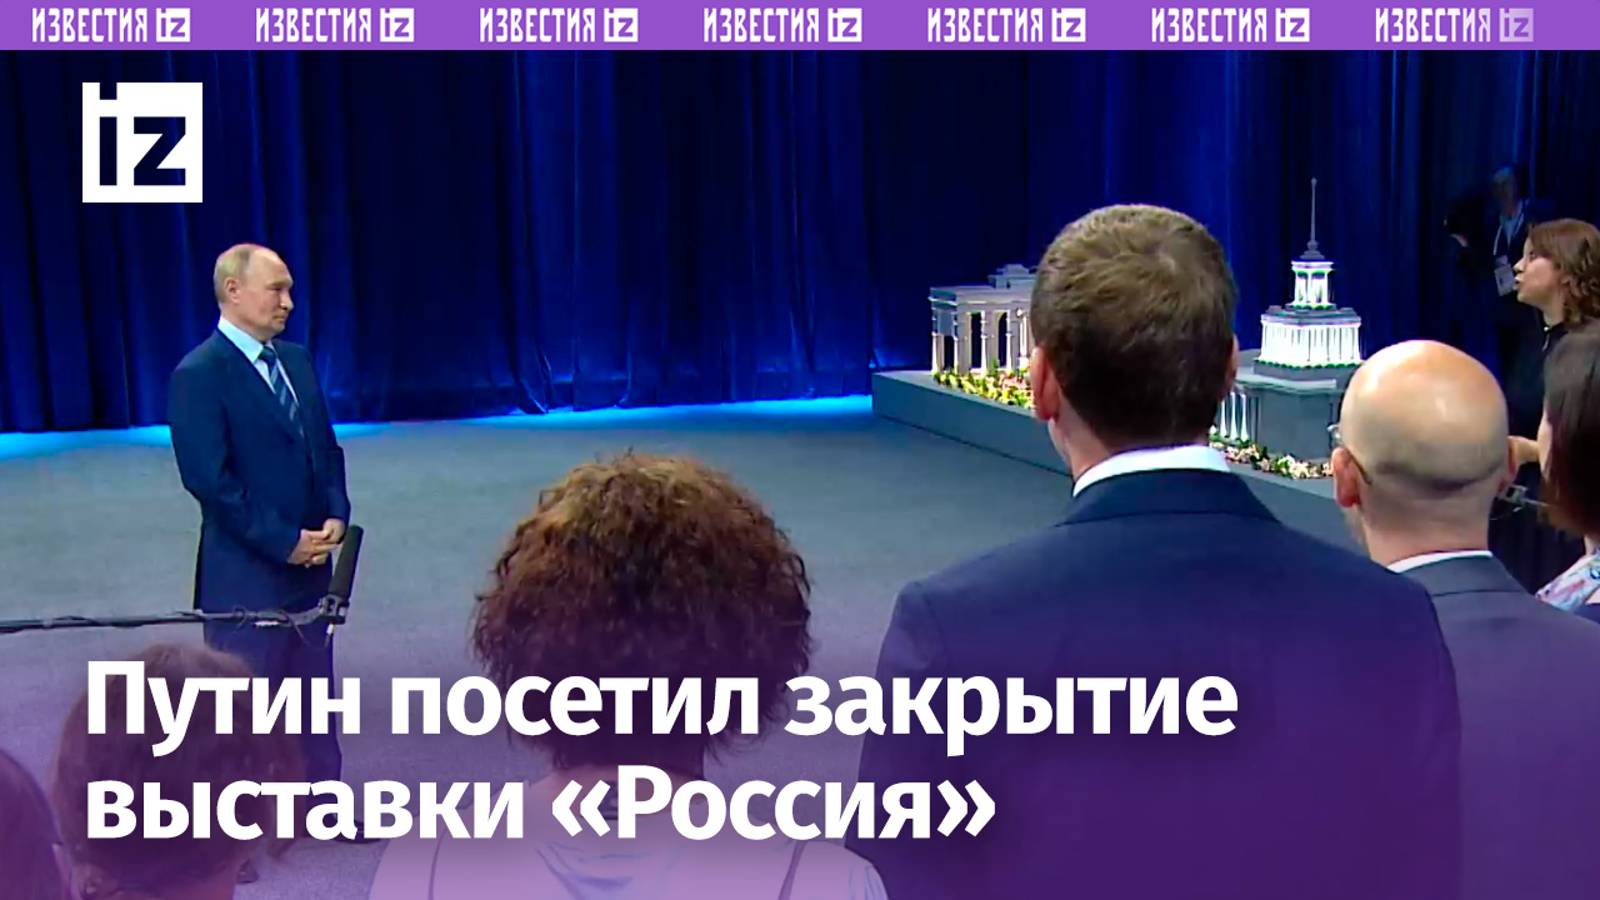 Владимир Путин на ВДНХ встретился с сотрудниками выставки-форума «Россия»